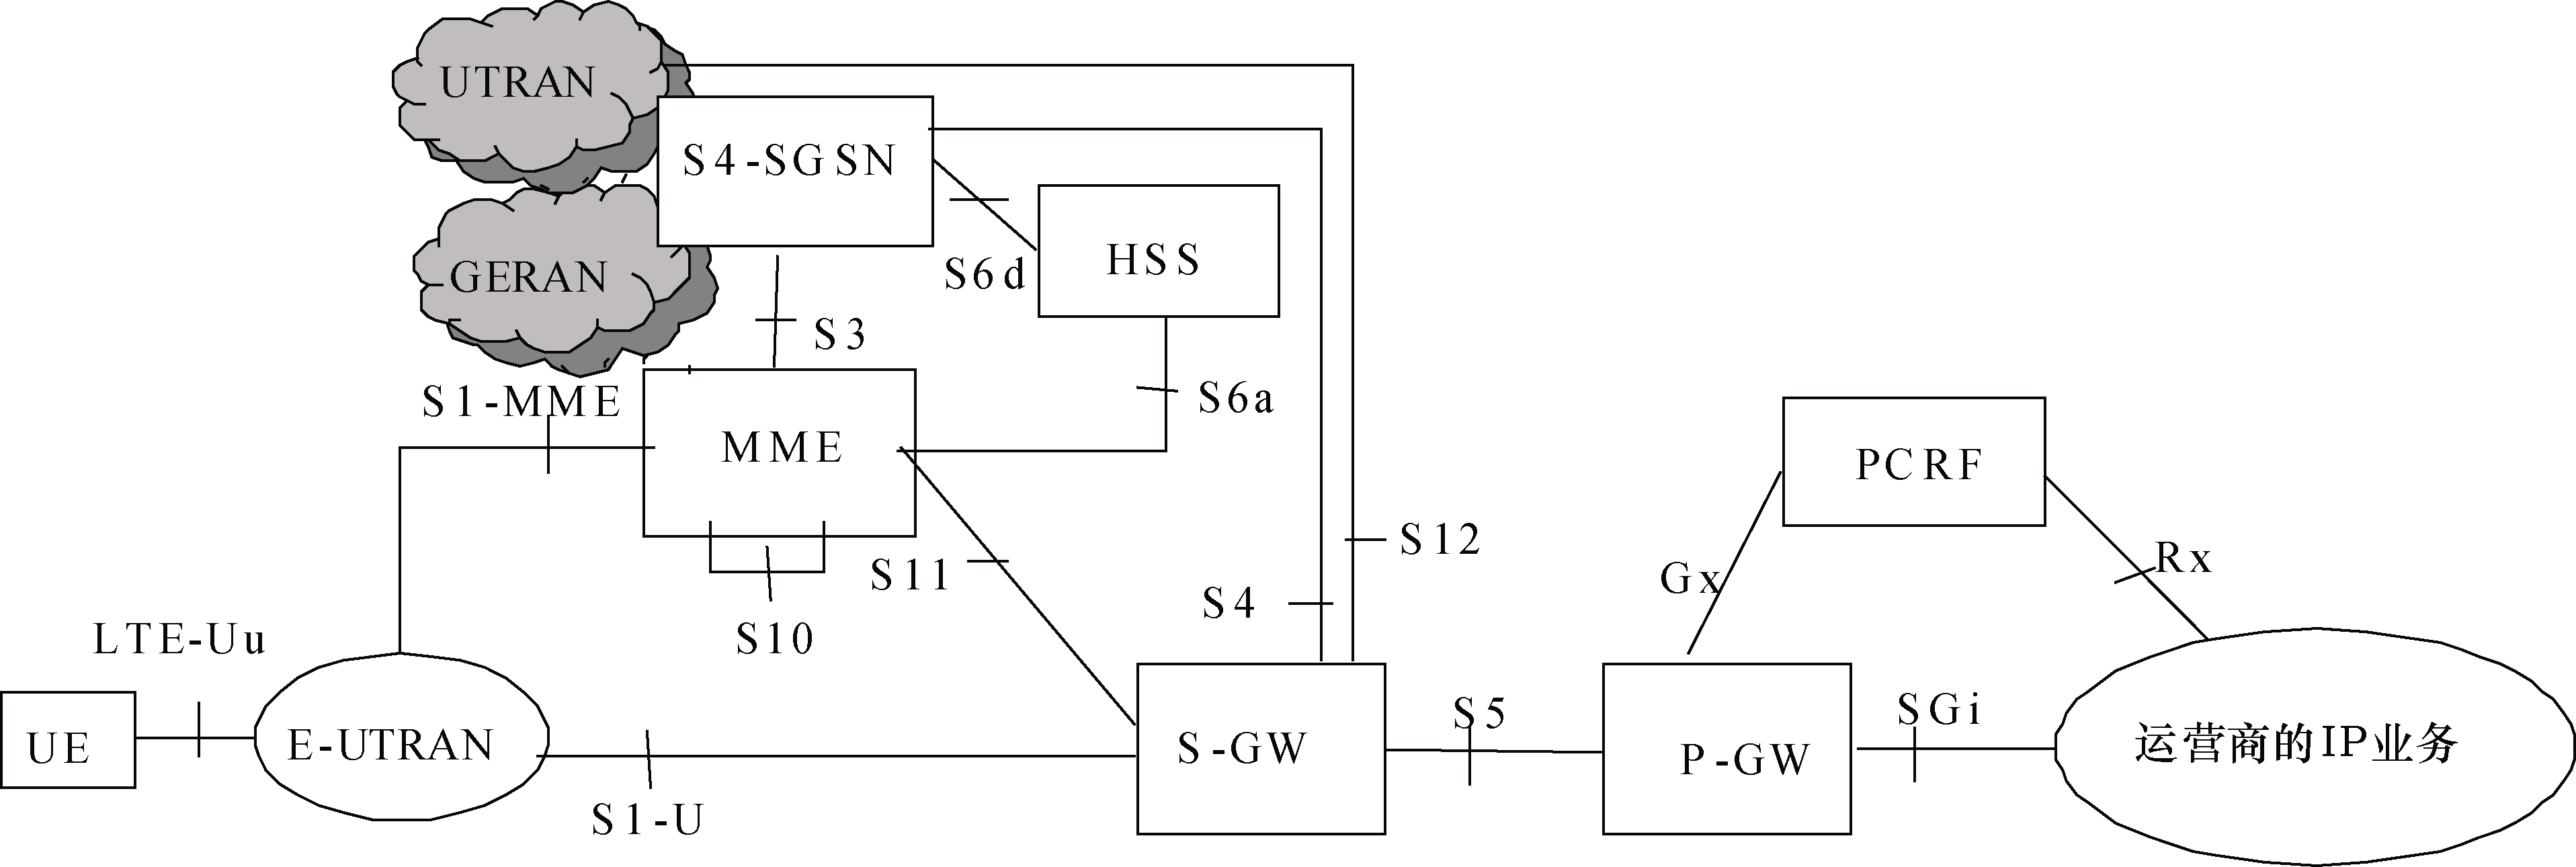 圖5  3GPP非漫遊架構—S-GW與P-GW分設